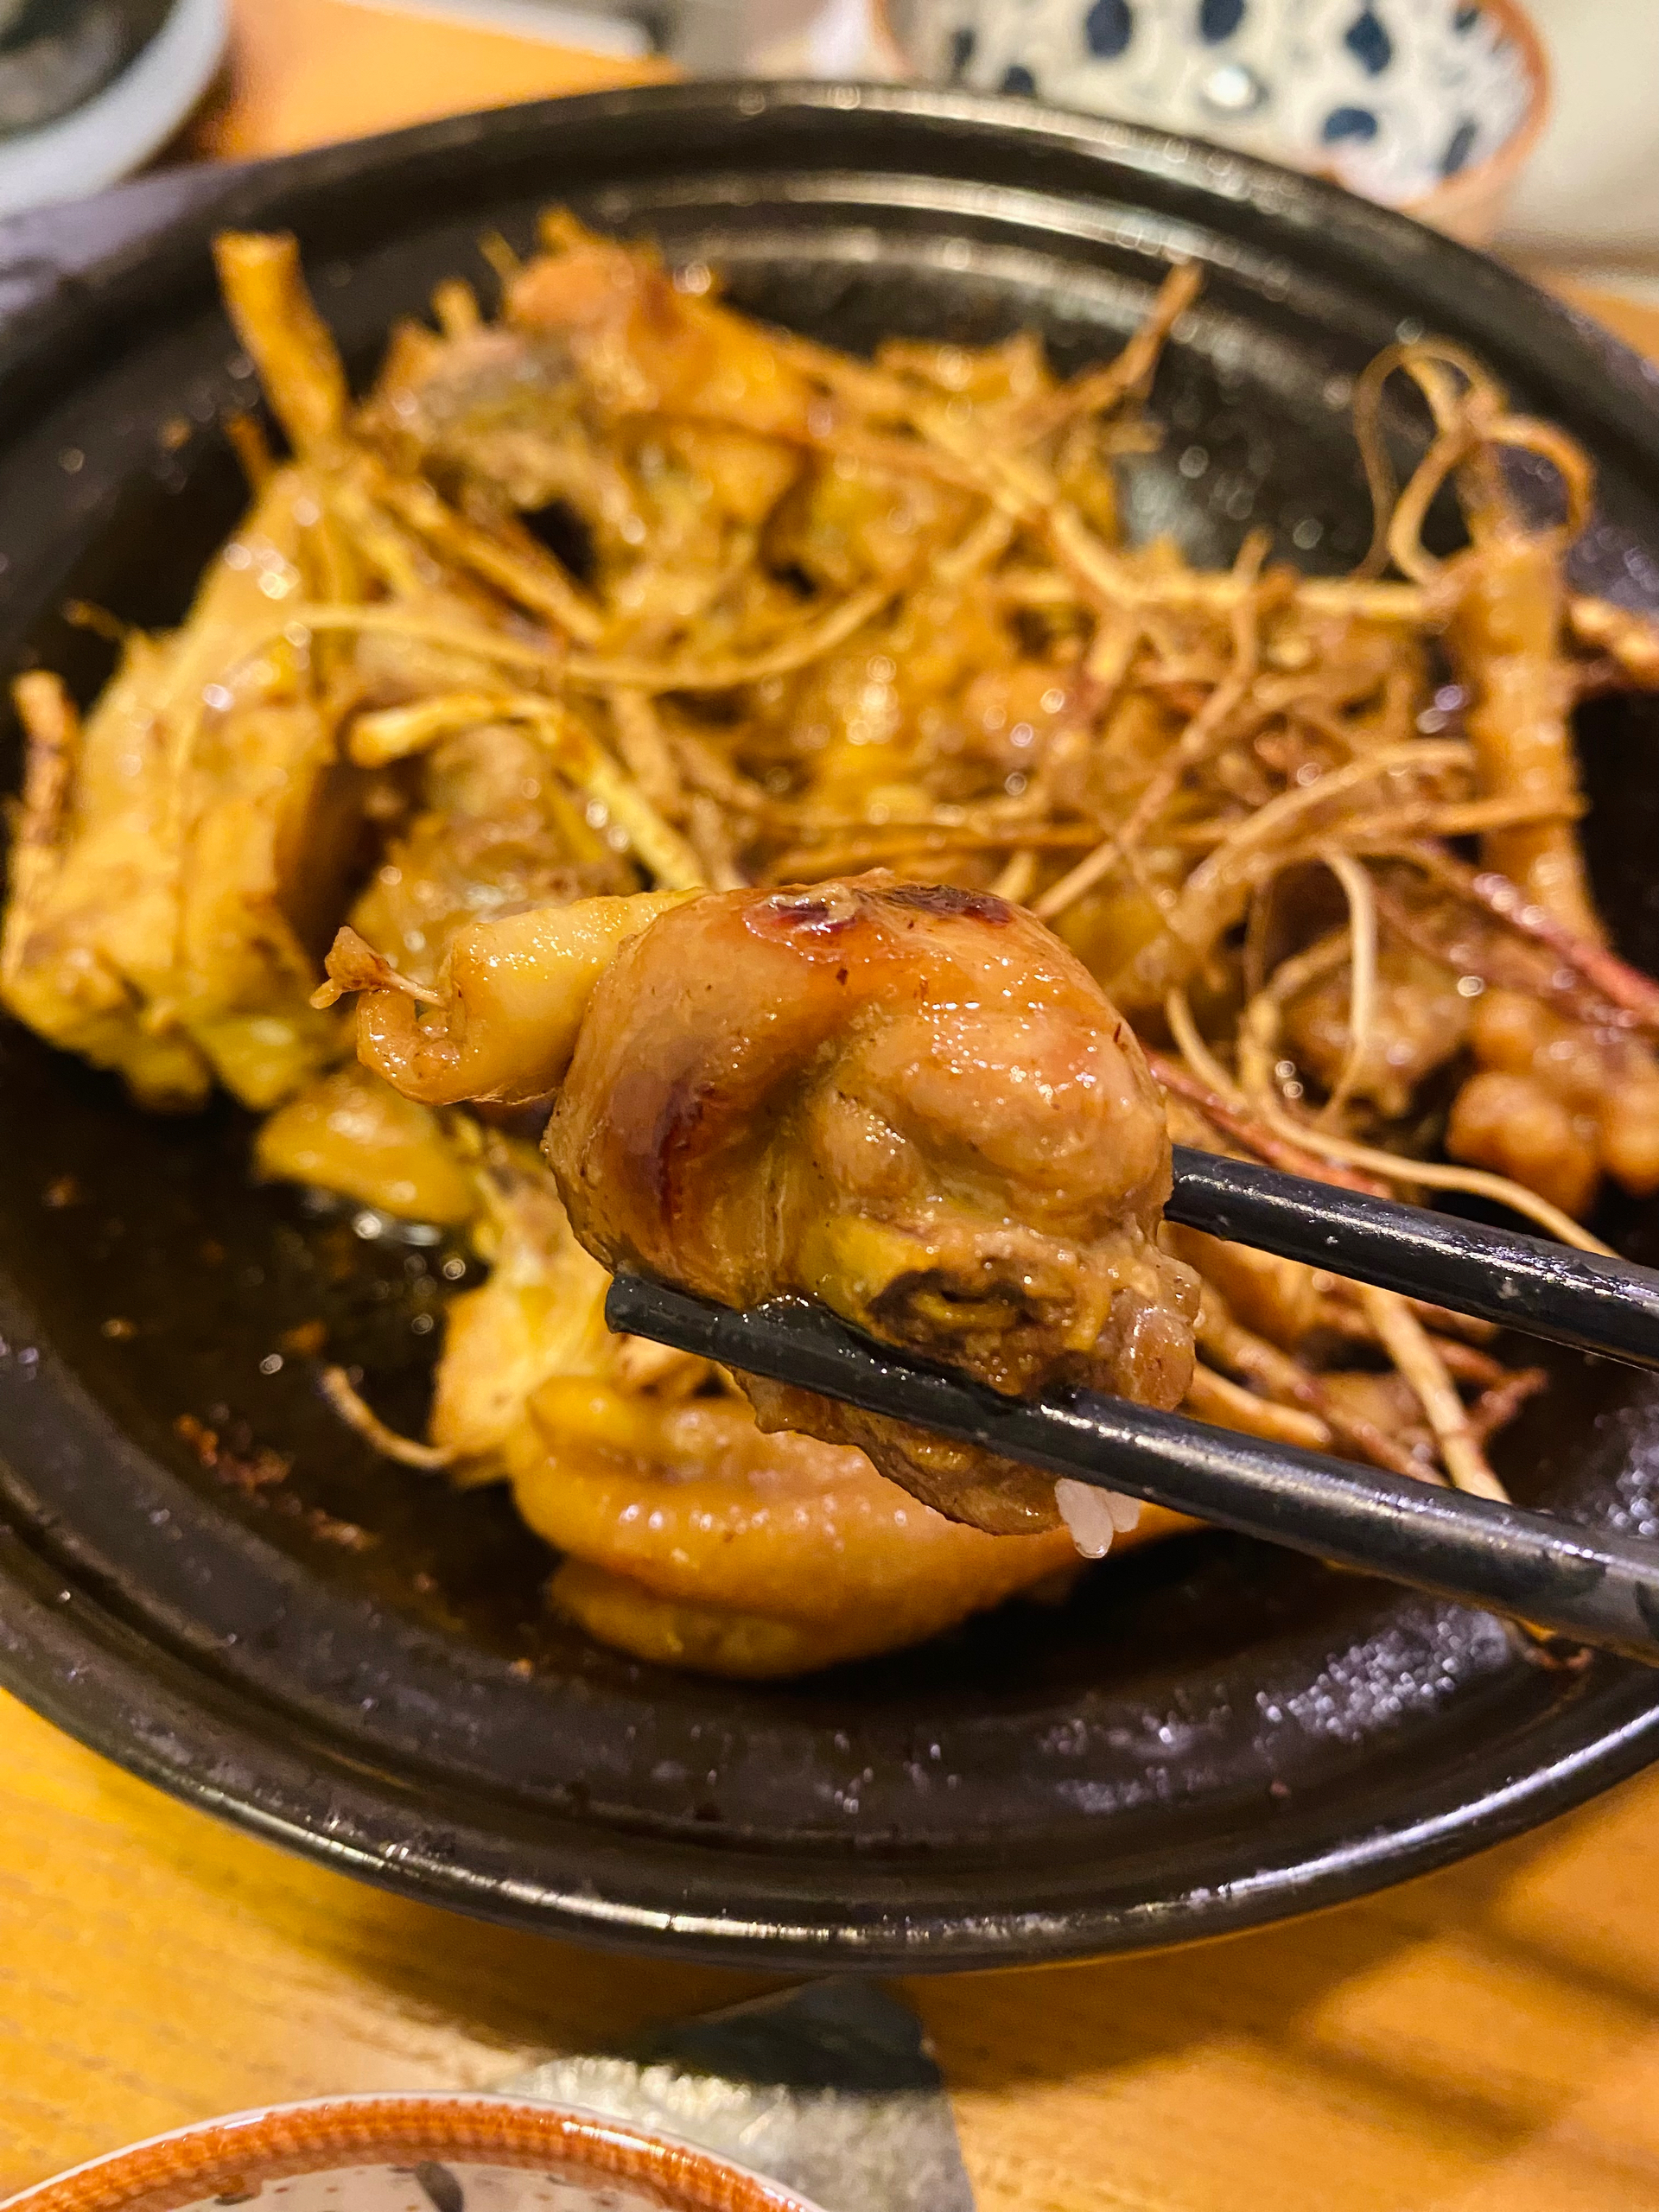 除了啫啫鸡煲，广东人喜欢的五指毛桃焗鸡也是十分美味！